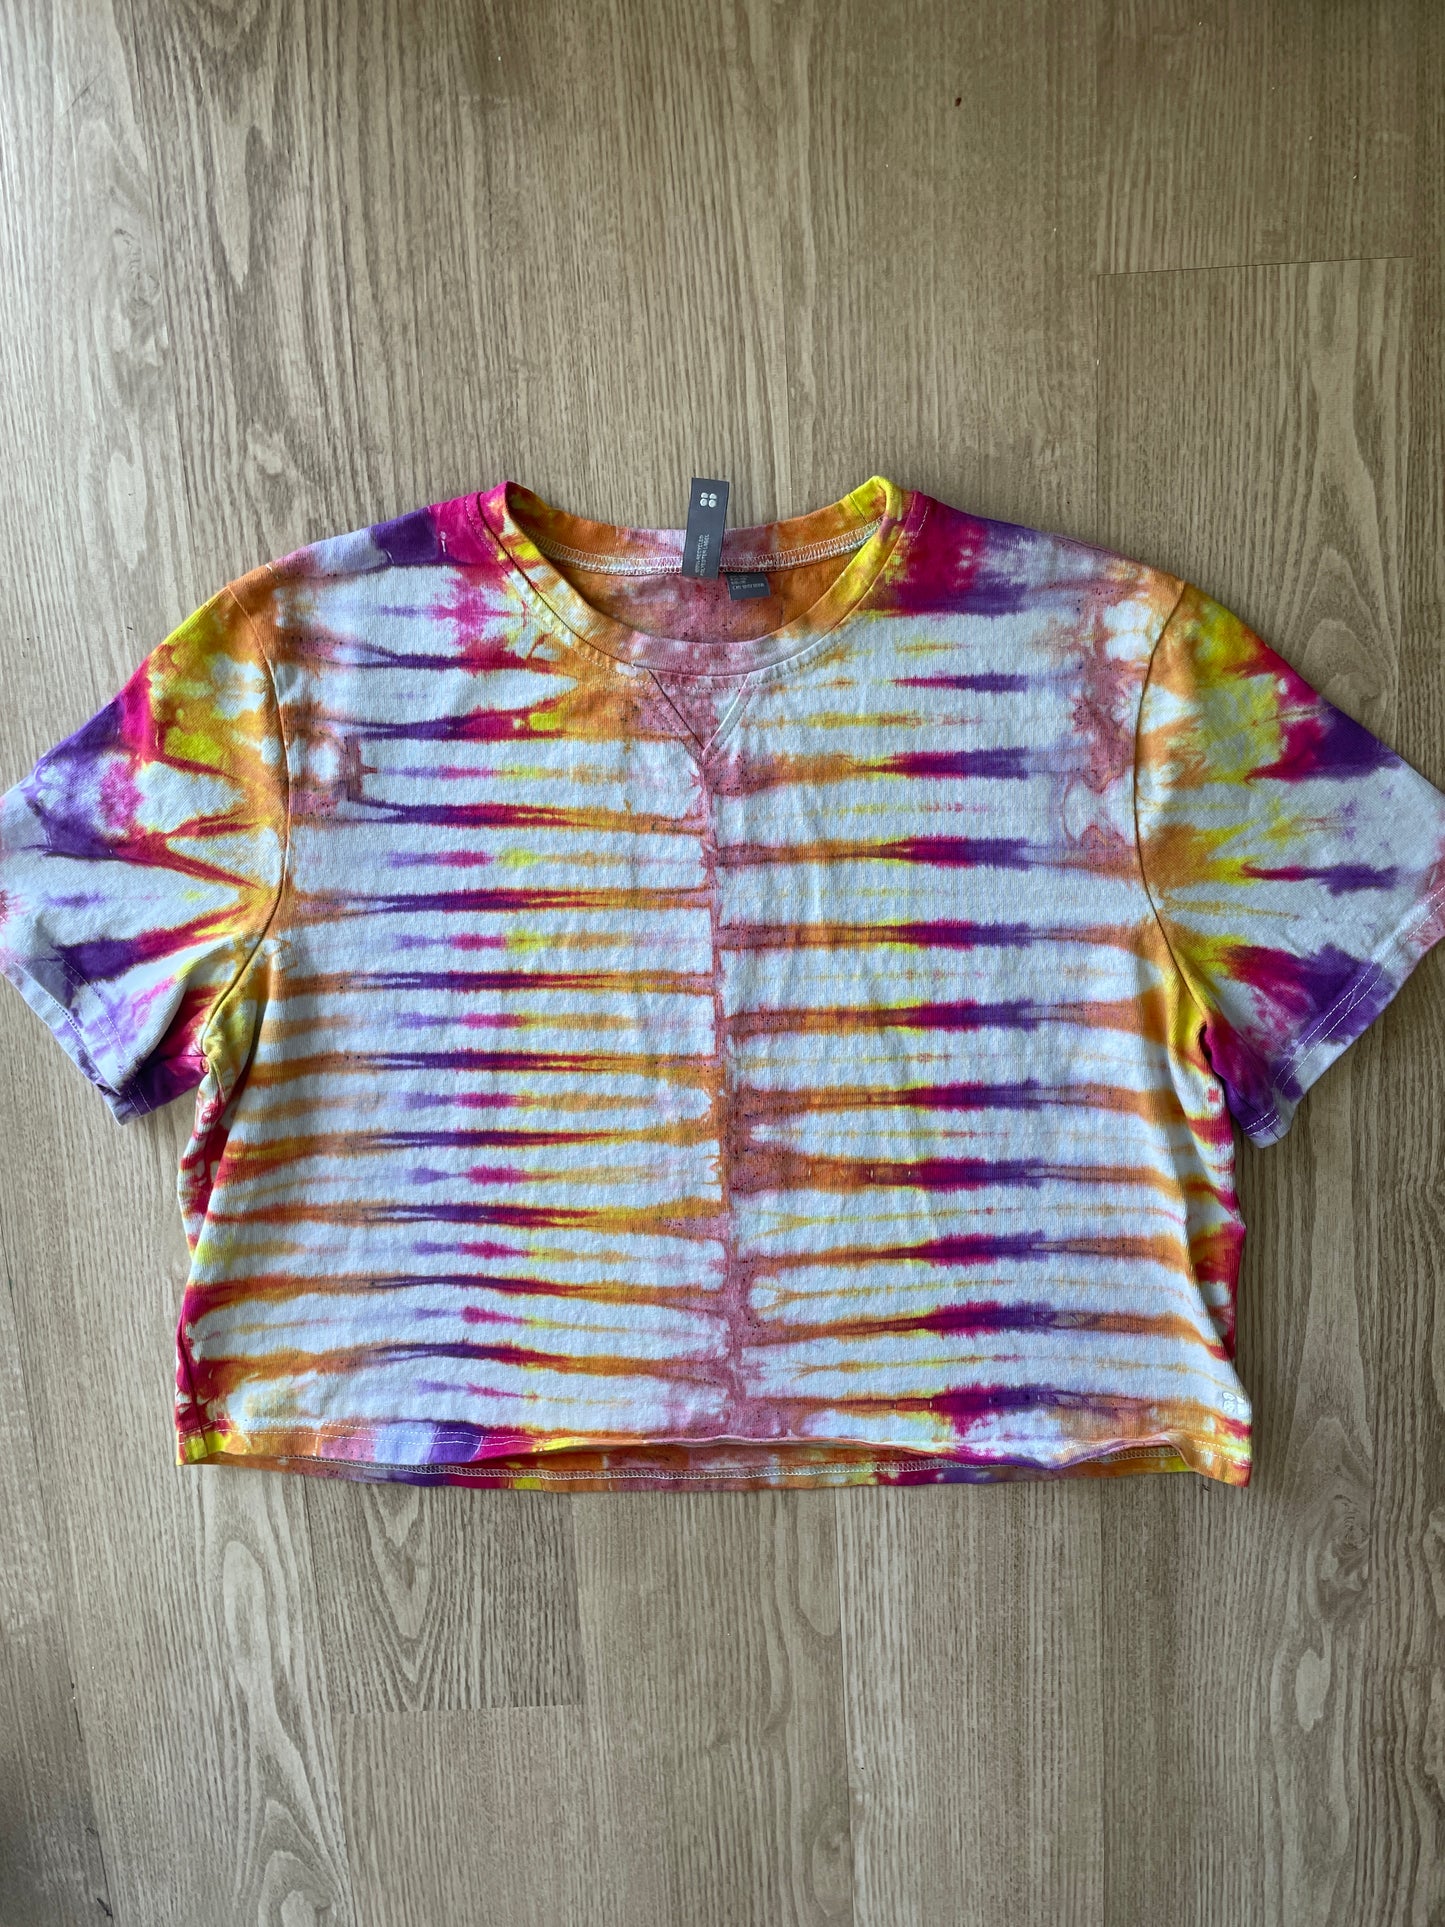 XXL Women's Sweaty Betty Handmade Tie Dye Crop Top | One-Of-a-Kind Multicolored Short Sleeve